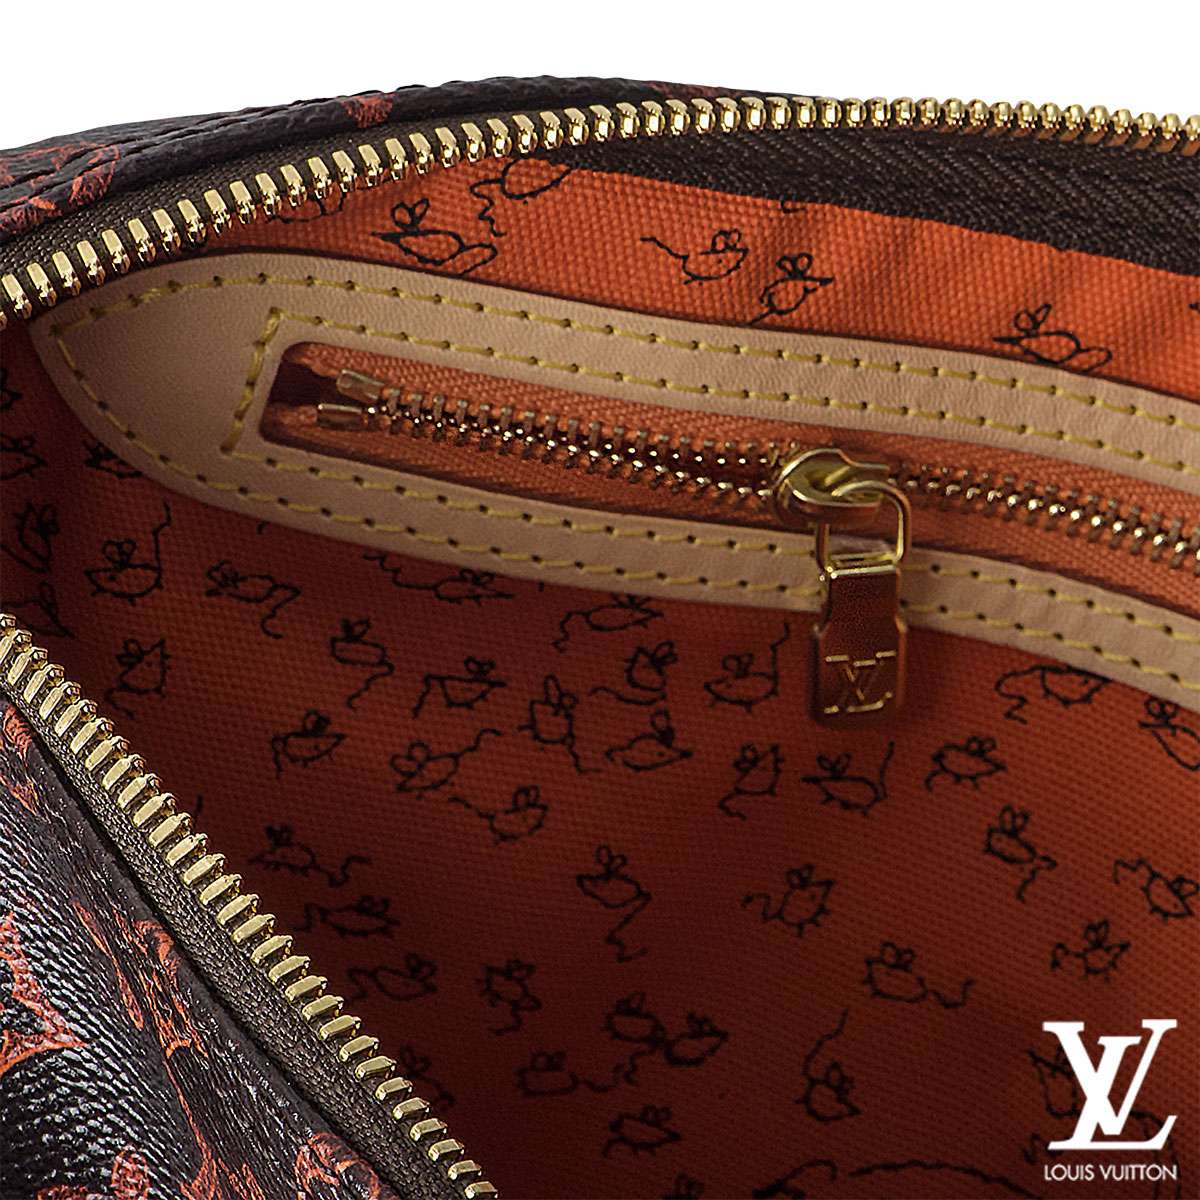 Louis Vuitton Twist Handbag Limited Edition Grace Coddington Catogram  Canvas MM